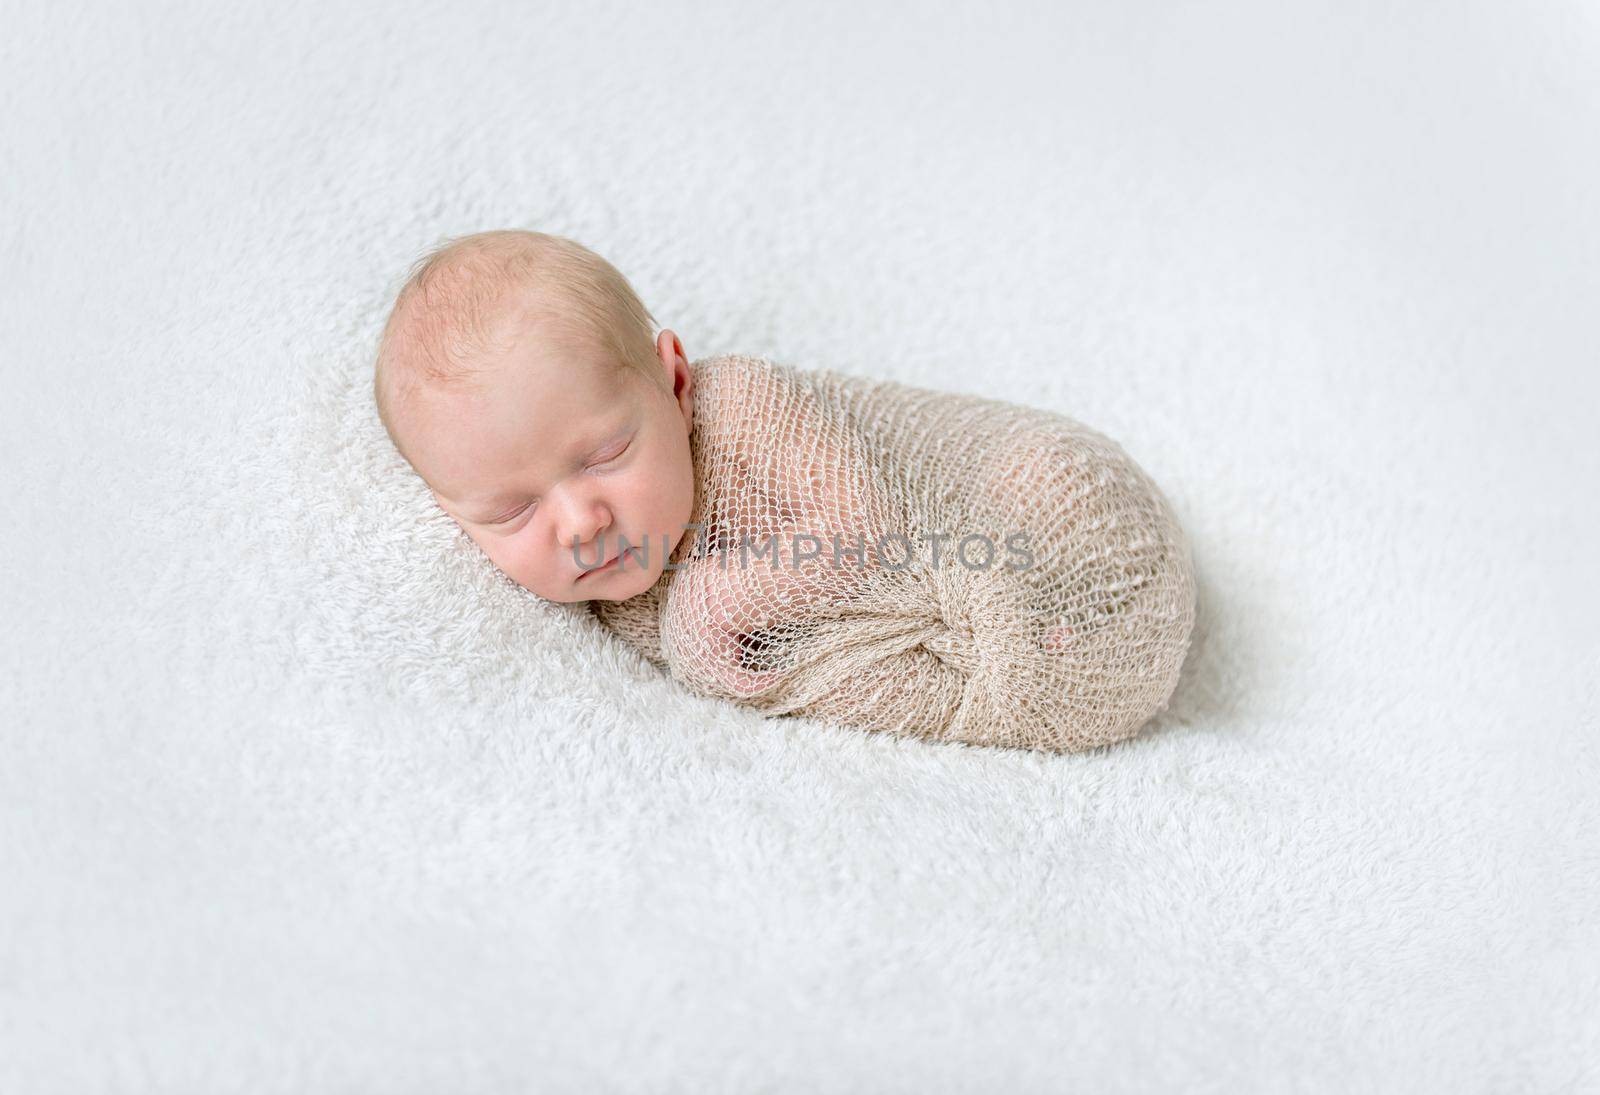 lovely sleeping baby wrapped in beige diaper by tan4ikk1